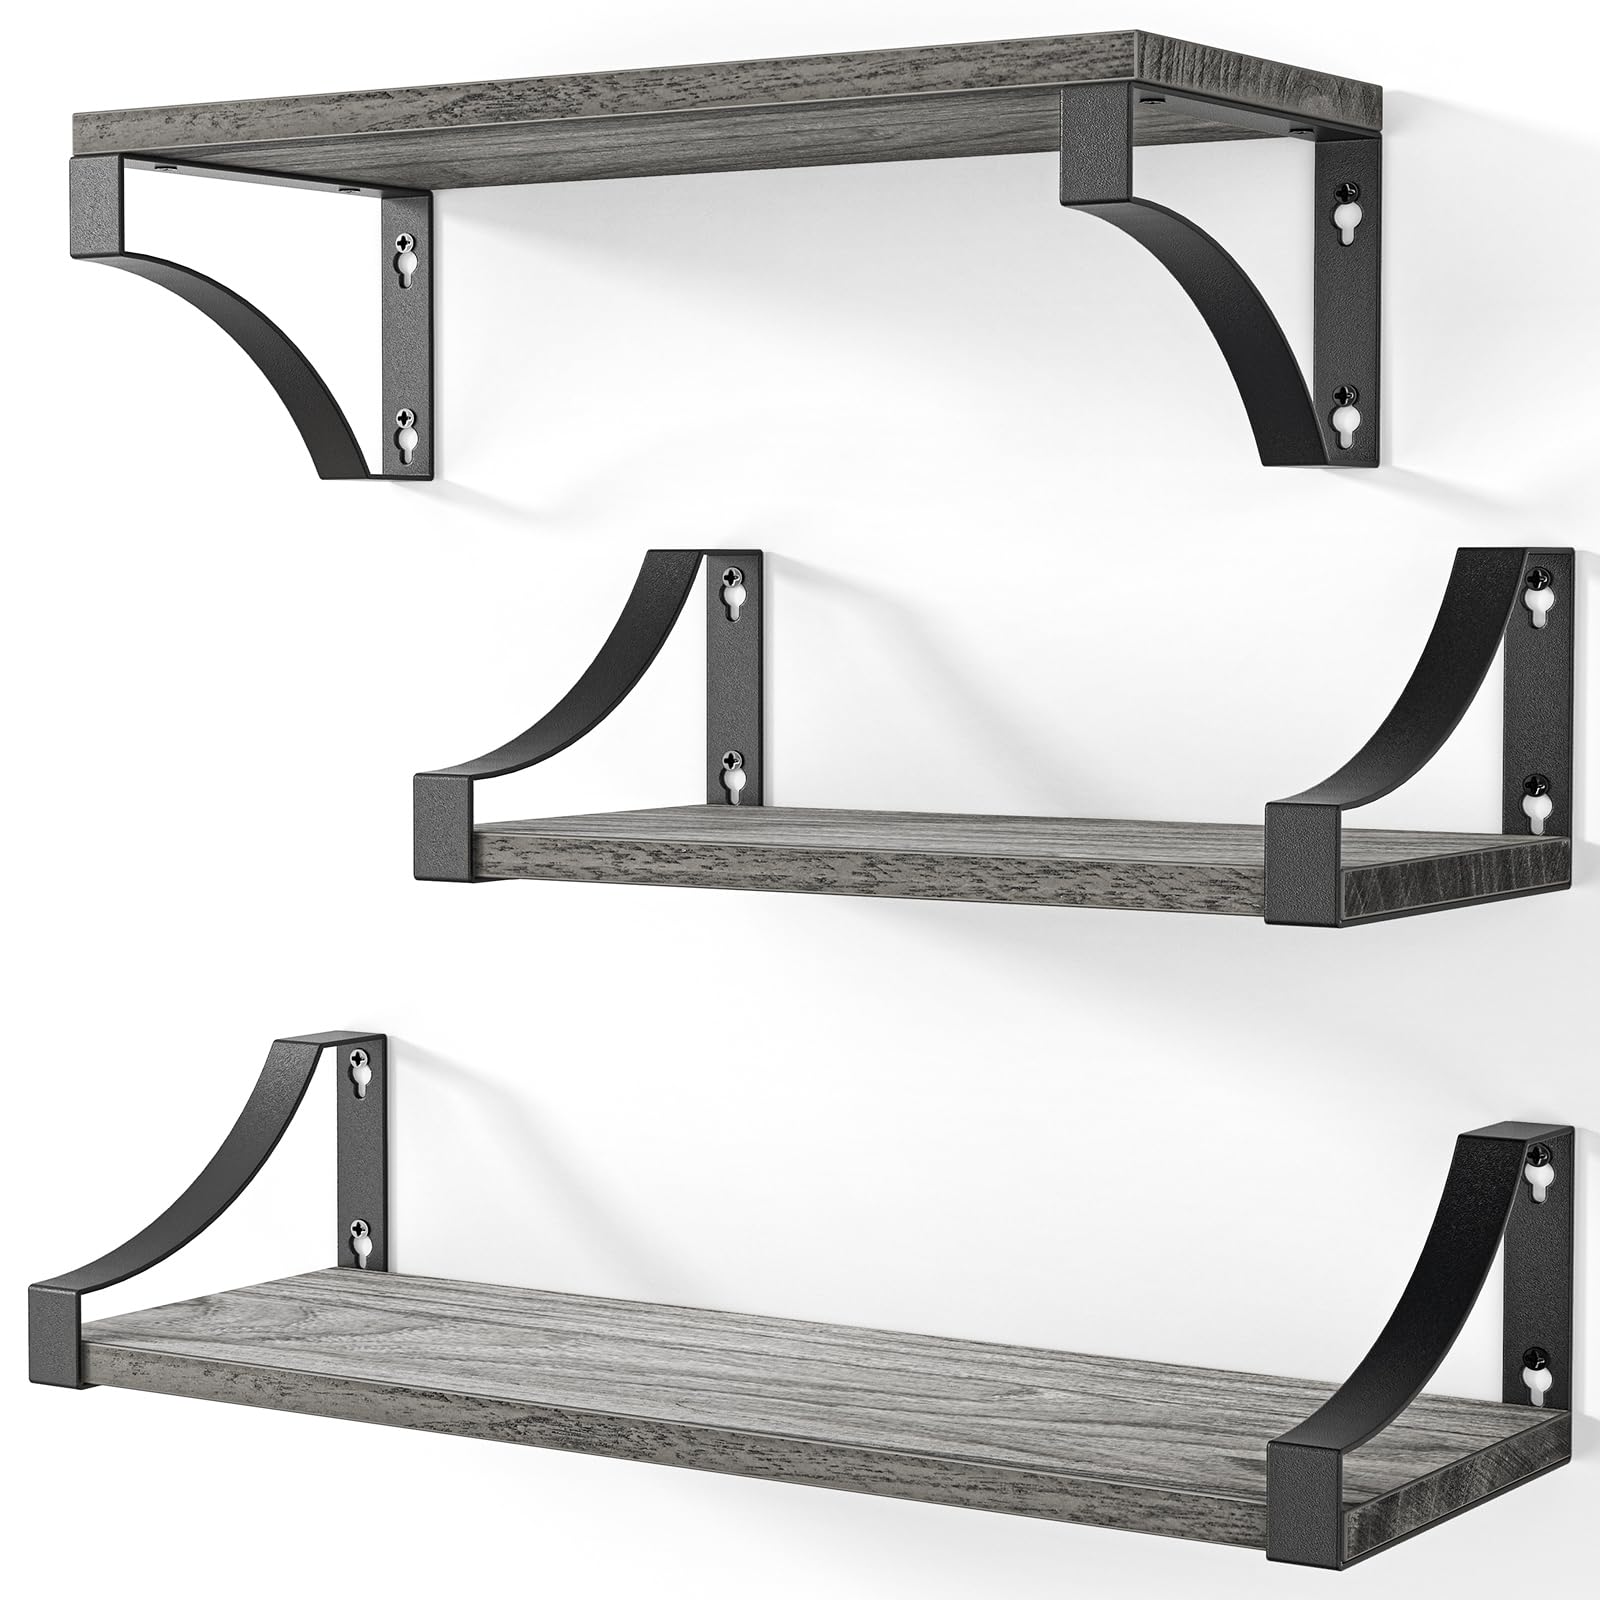 3-Pack AMADA Home-Furnishing Shelves (Grey) $10 @ Amazon